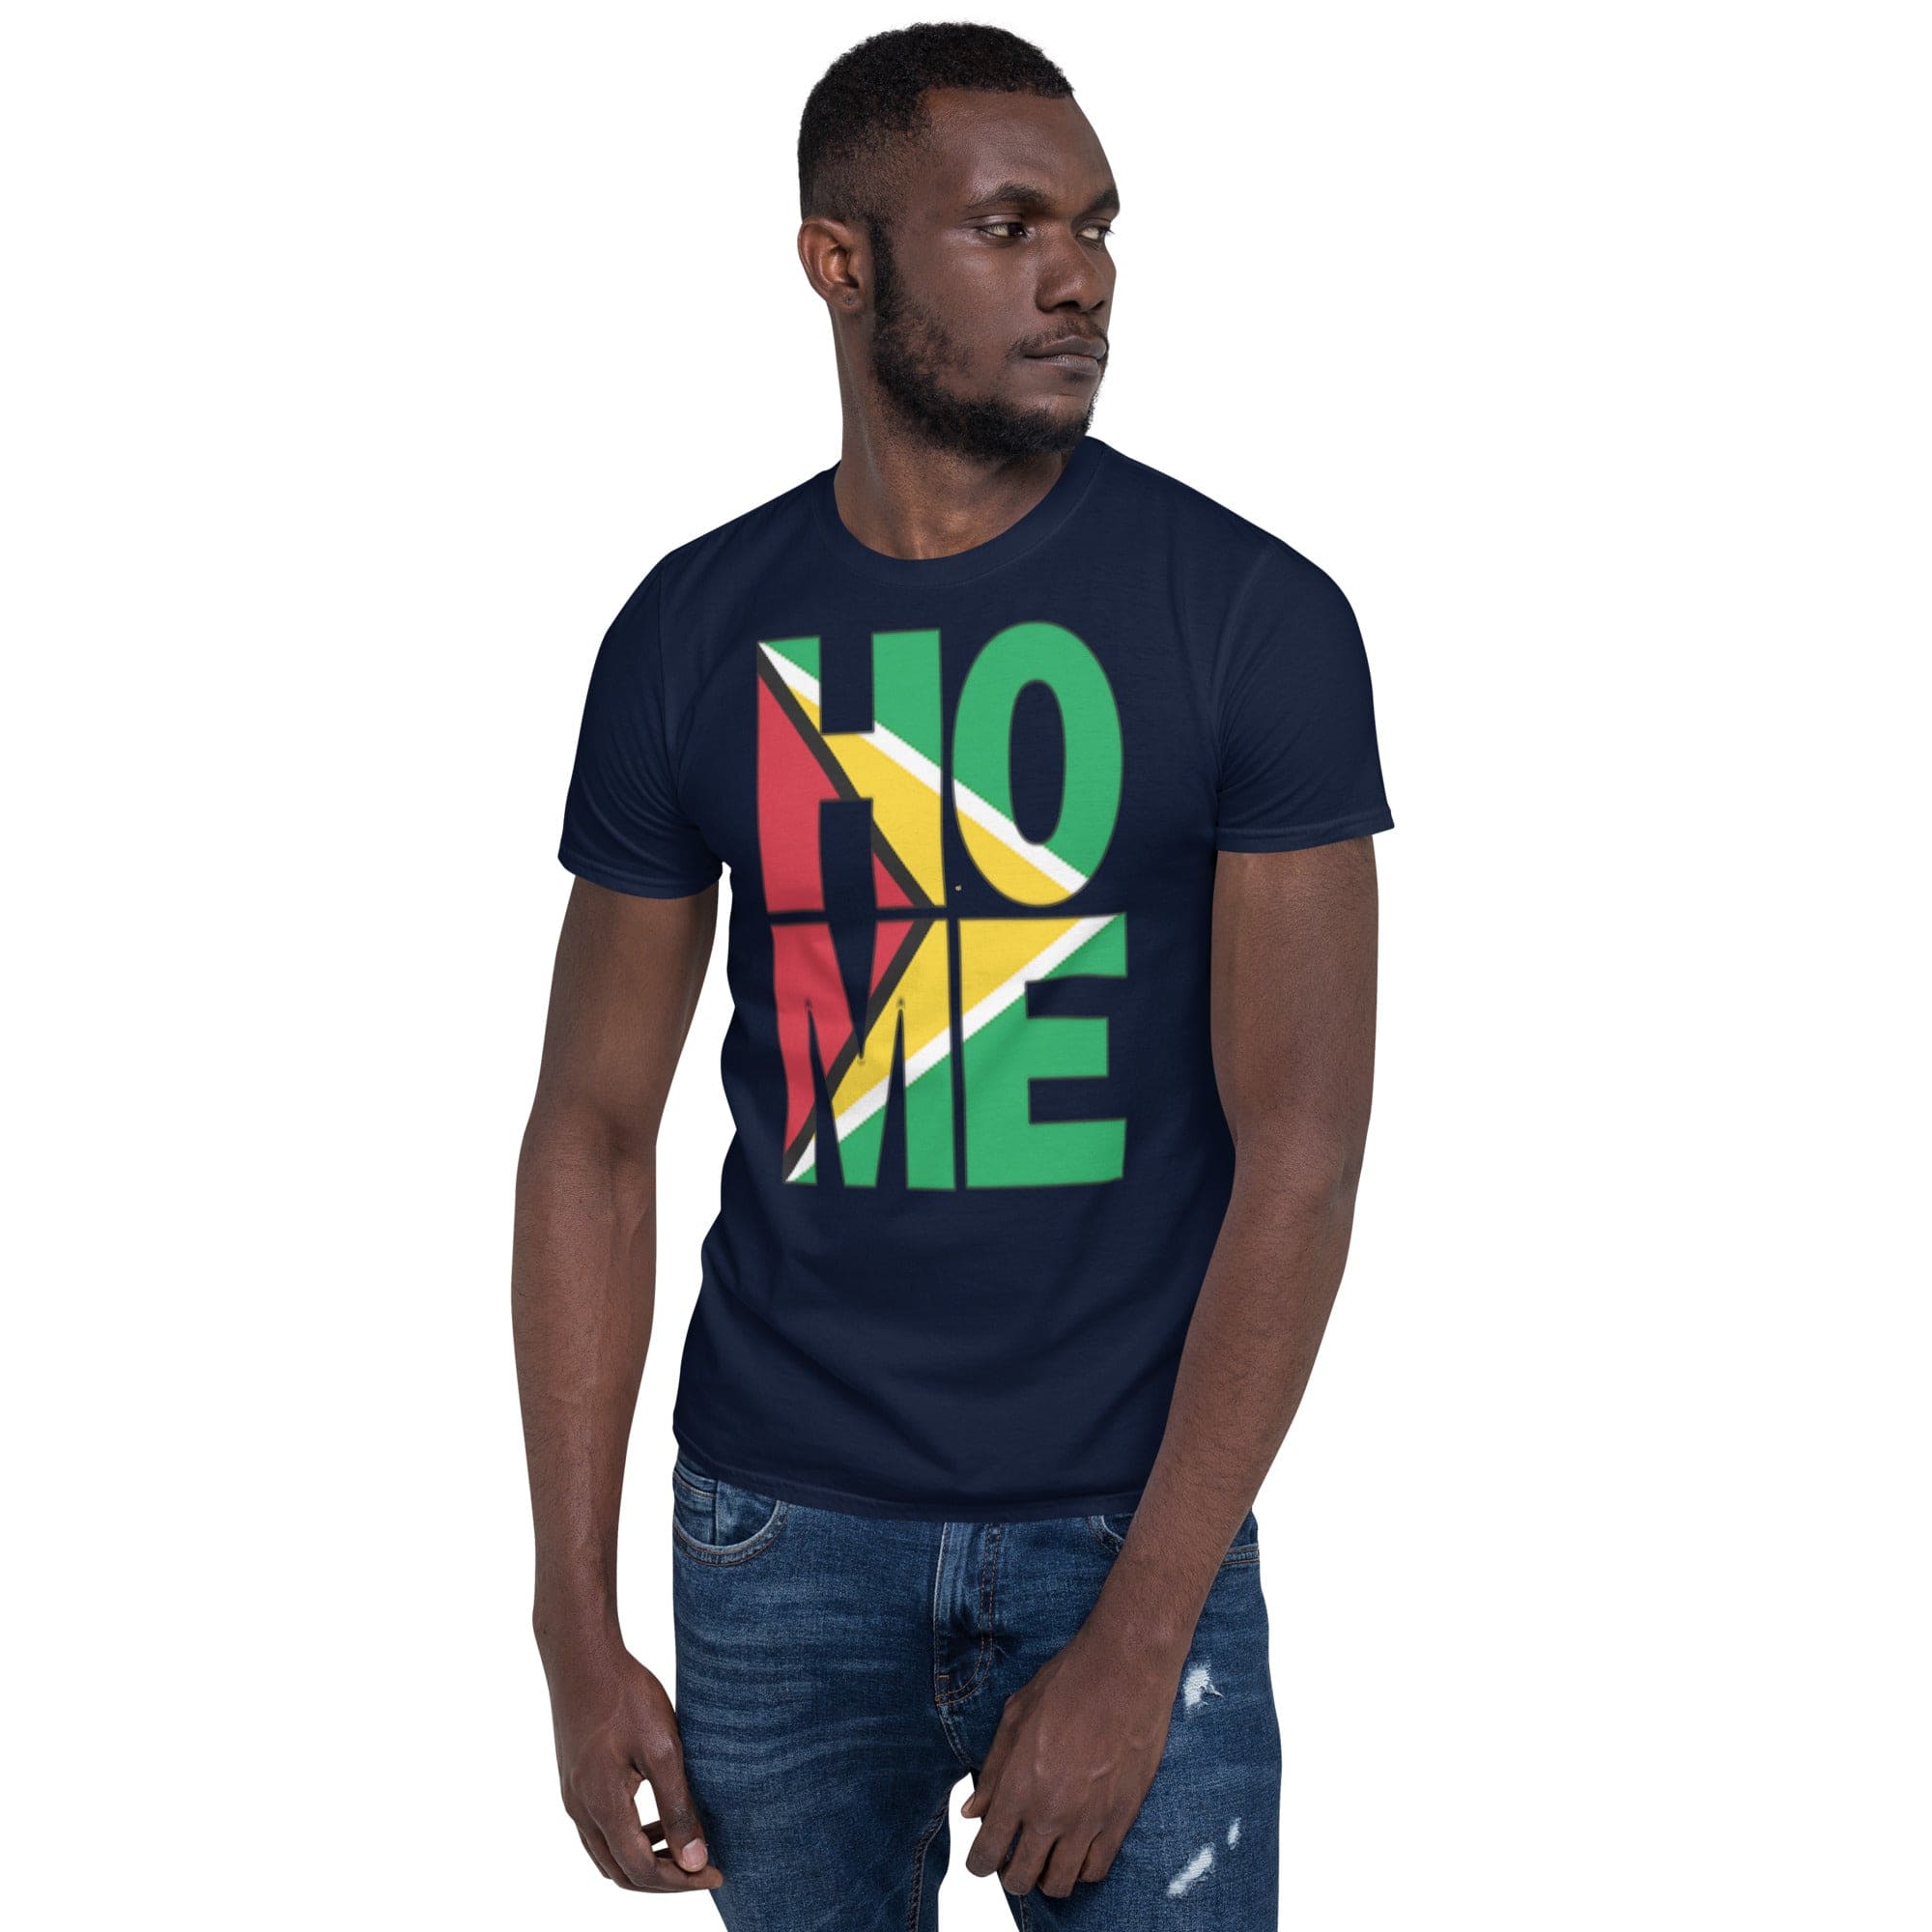 Guyana flag spelling HOME on black men wearing navy color shirt